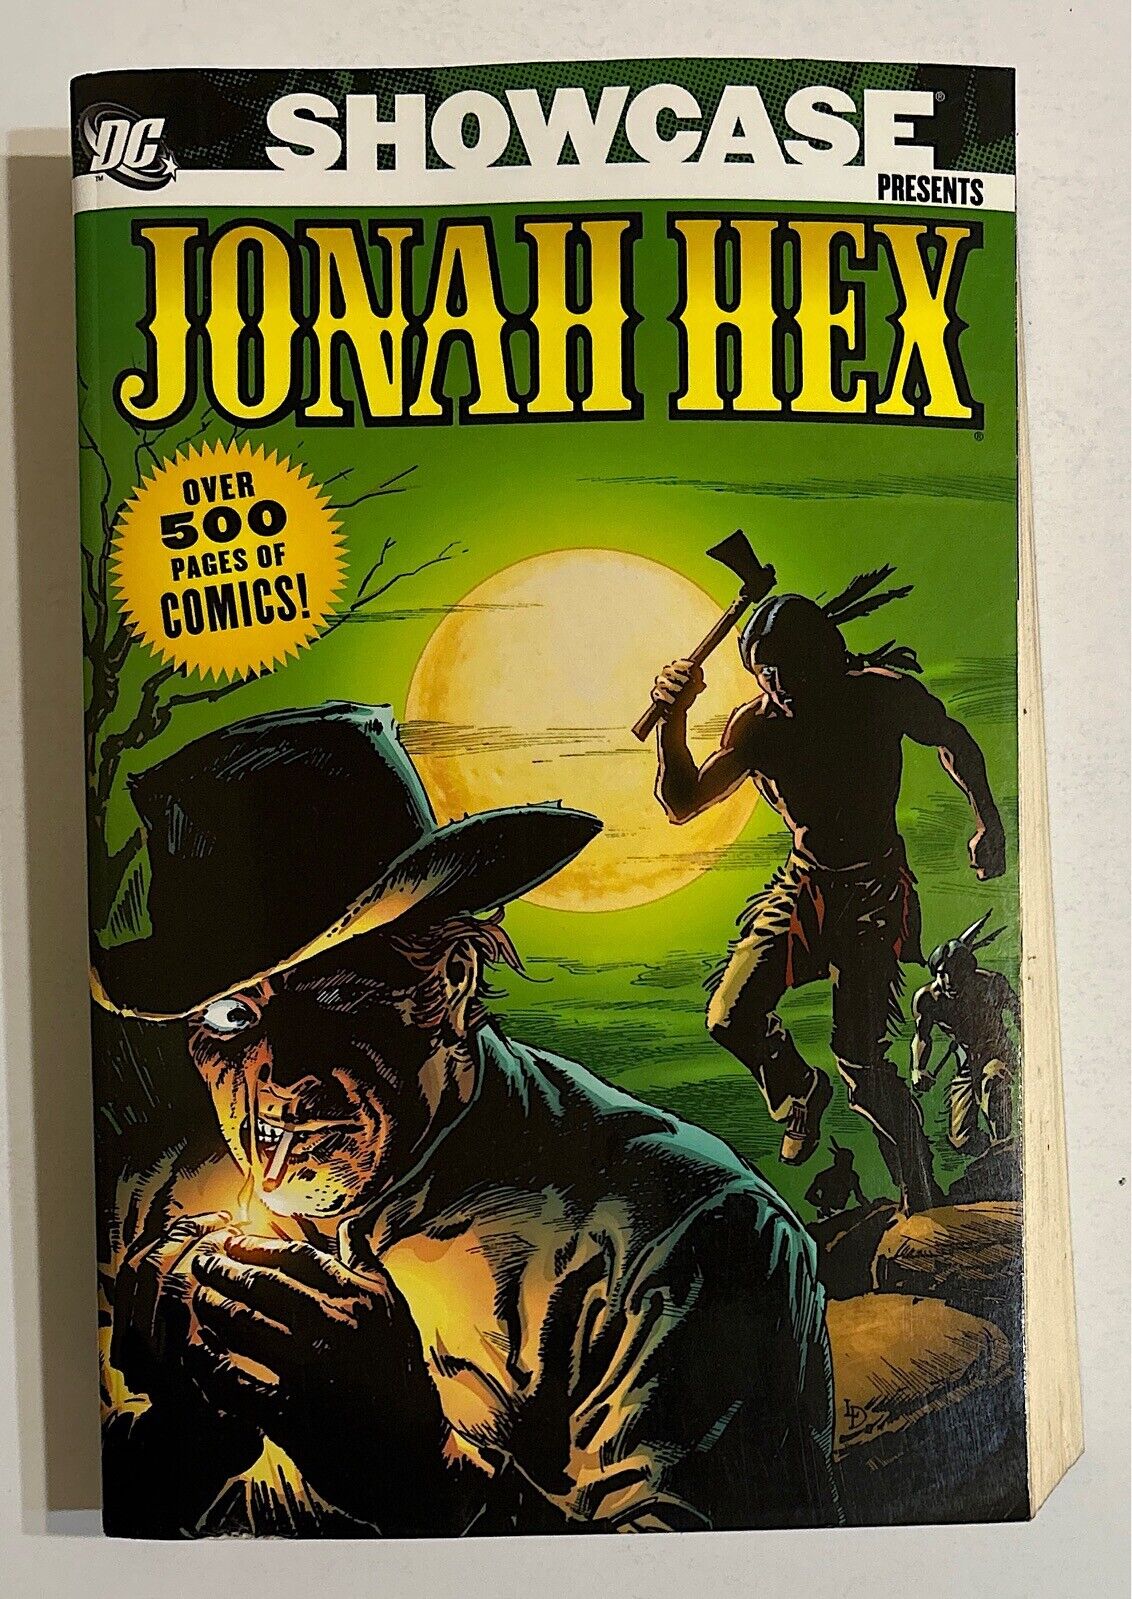 DC Showcase Presents Jonah Hex Vol 1 TPB SOME WEAR